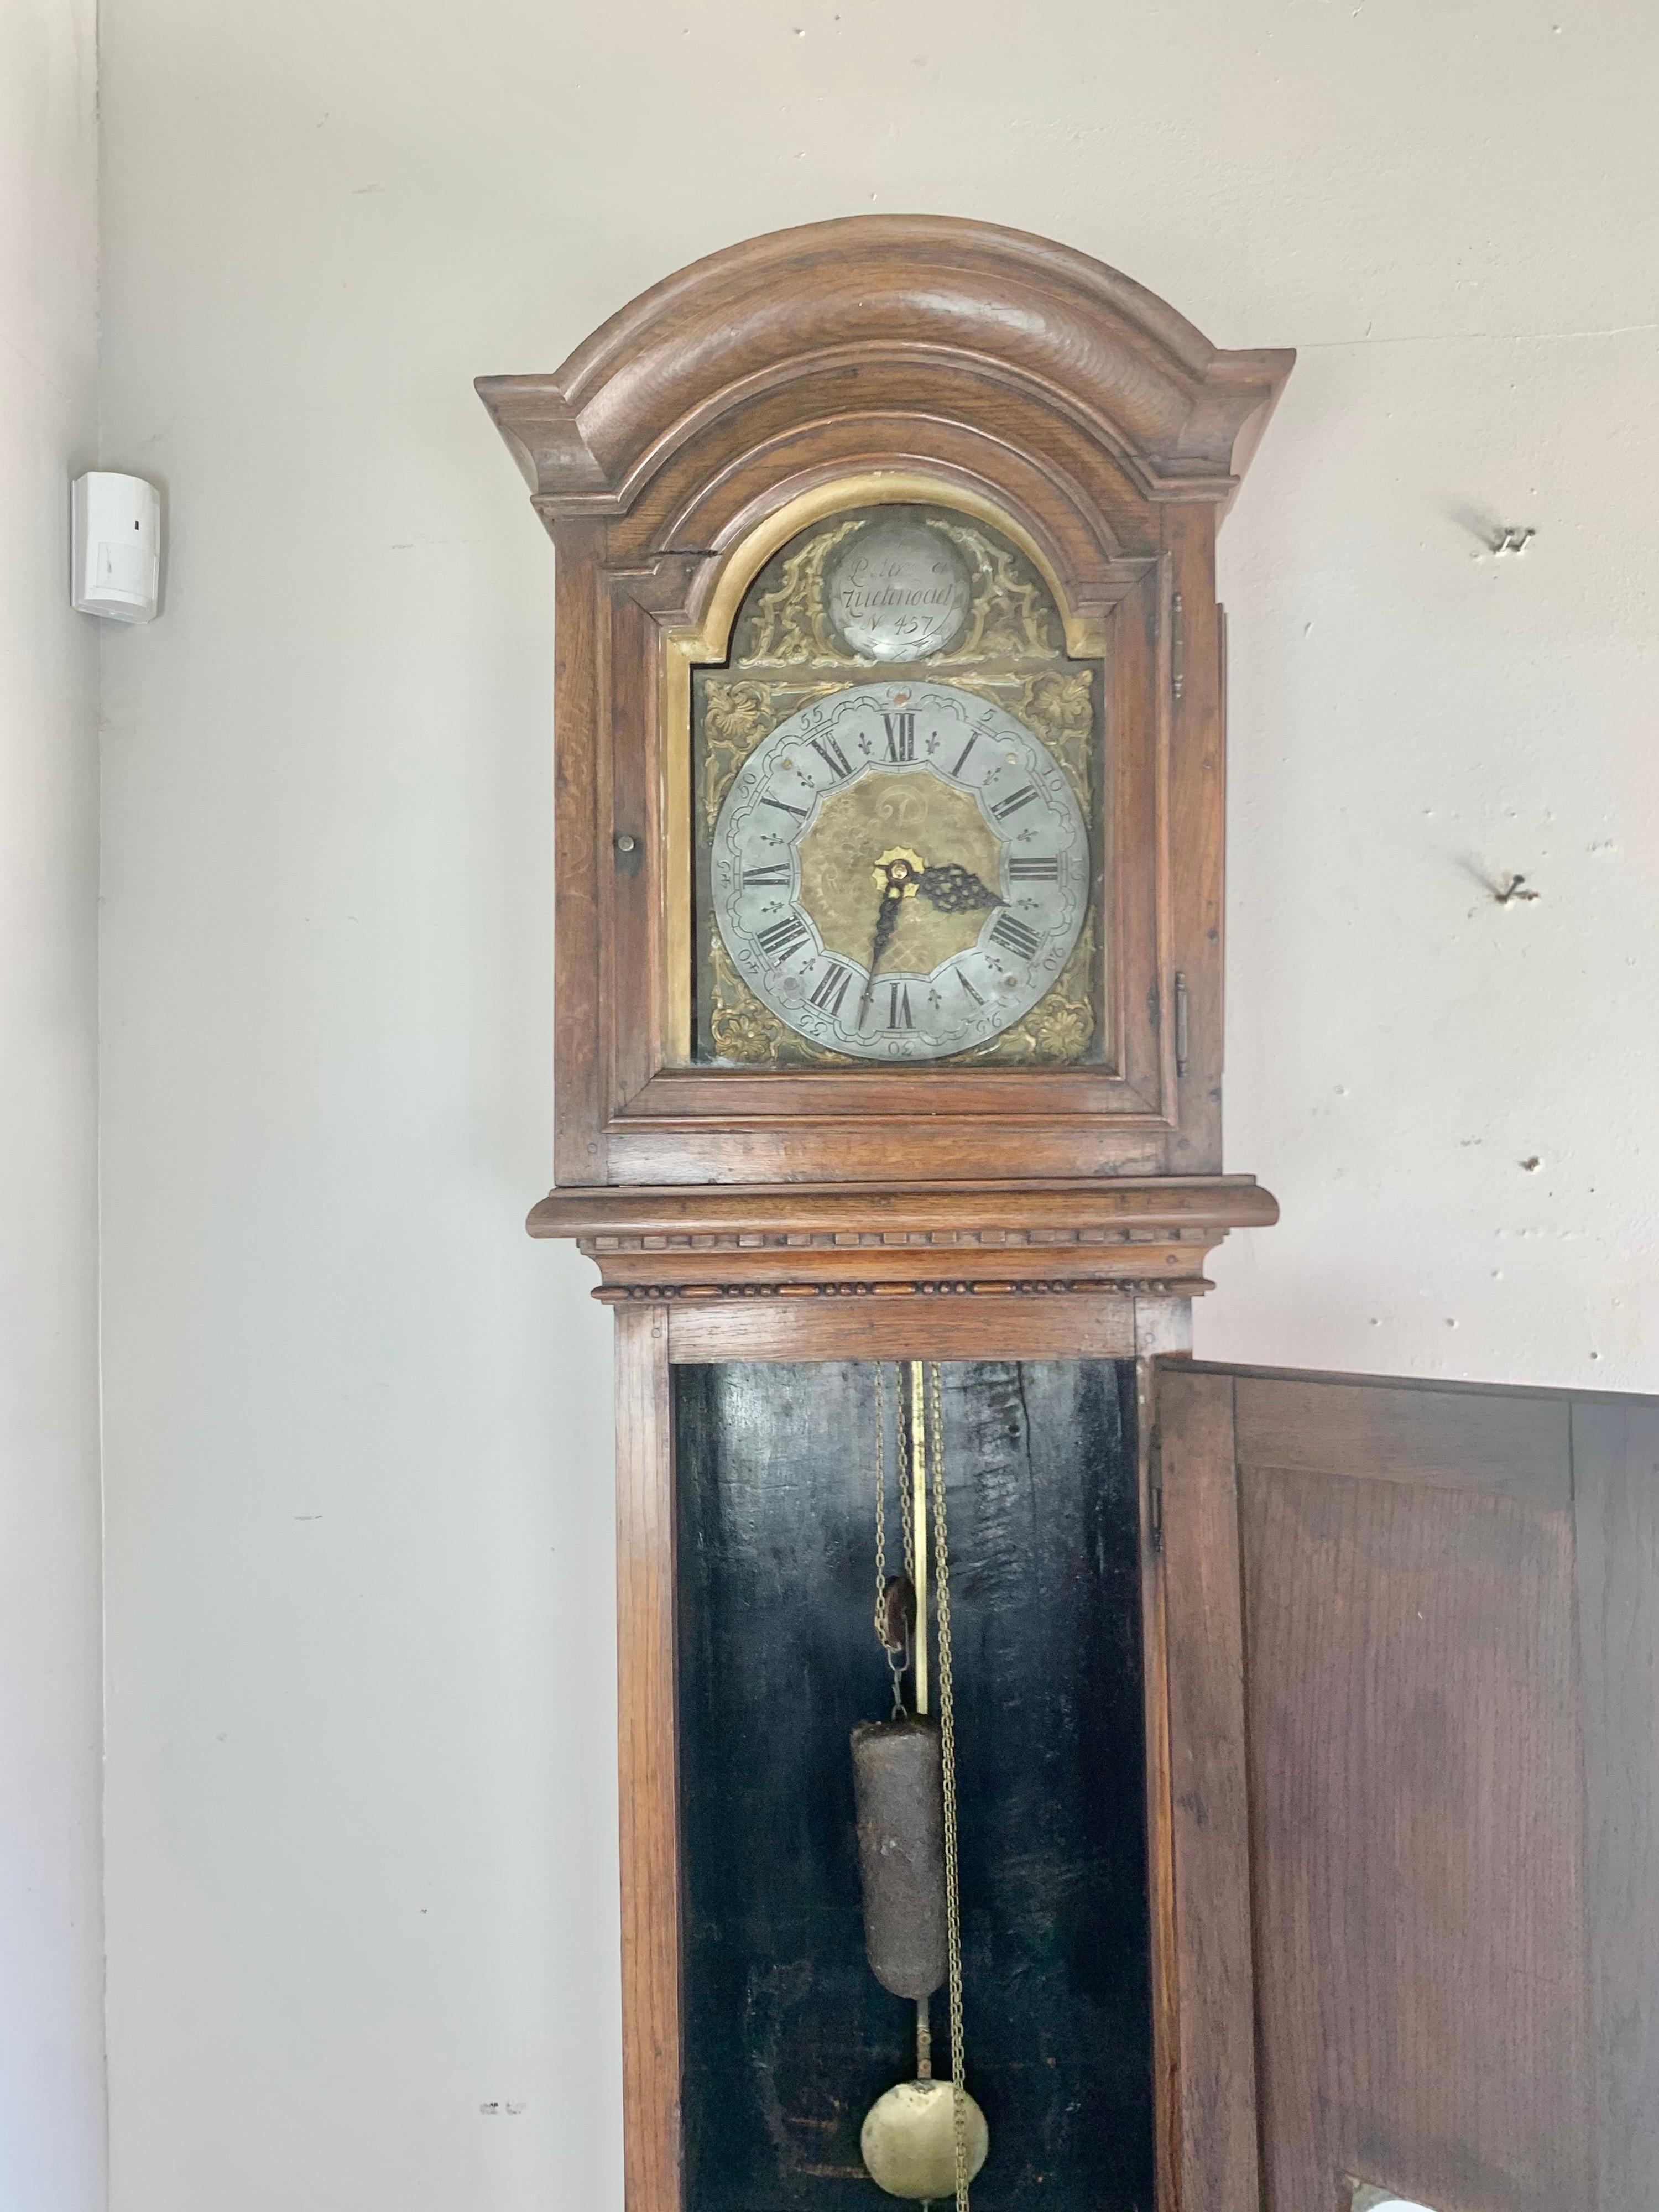 Horloge provinciale belge de la fin du XVIIIe siècle à boîtier long, avec un motif d'étoile incrusté dans le bas.  L'horloge a conservé tous ses accessoires d'origine.  La porte avec la fenêtre du pendule s'ouvre pour révéler un pendule à poids